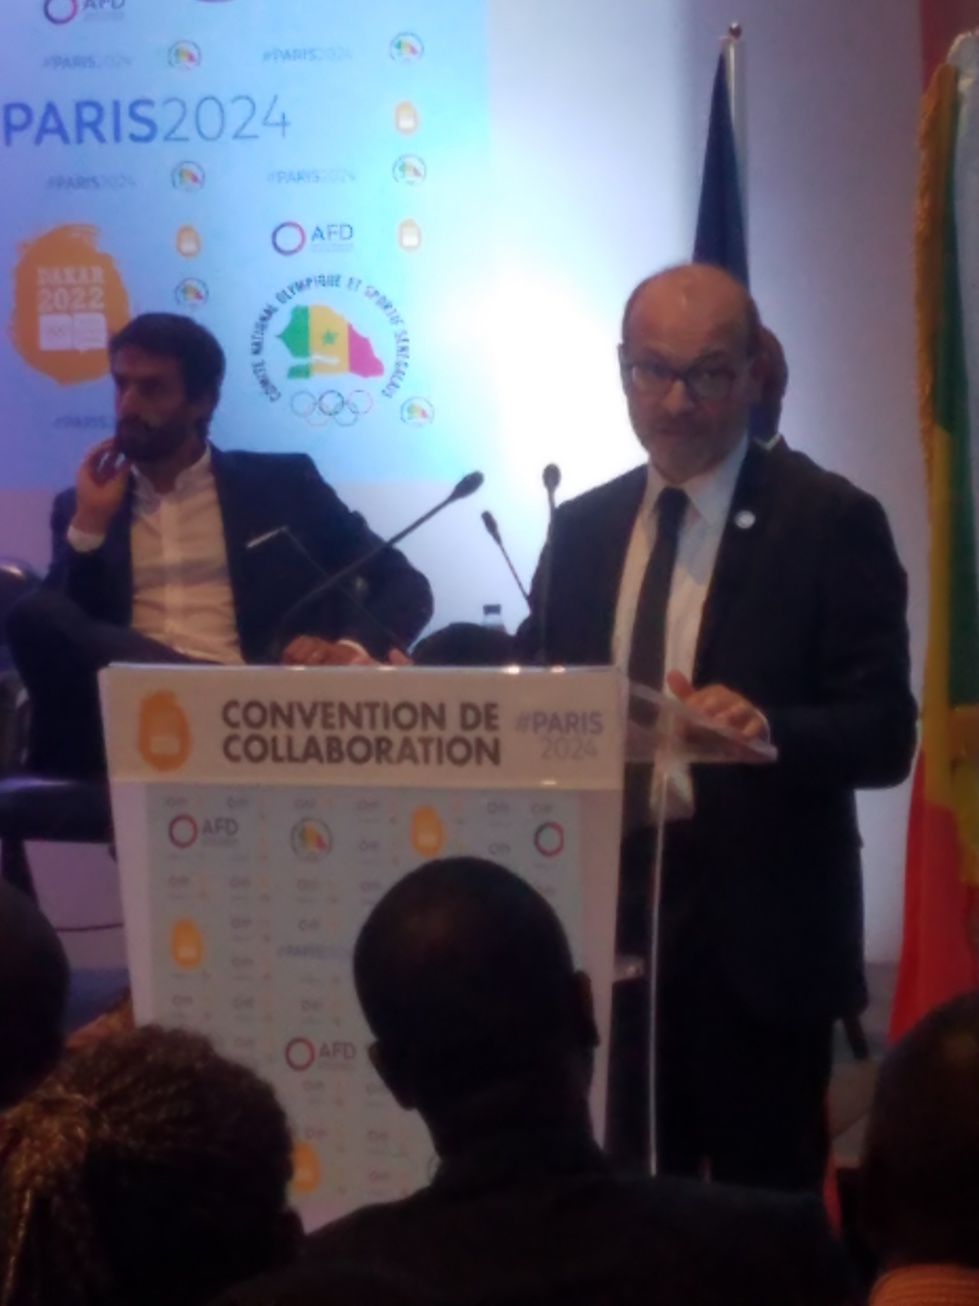 Paris 2024 s’engage aux côtés de Dakar 2022, dans un nouveau mode de coopération internationale